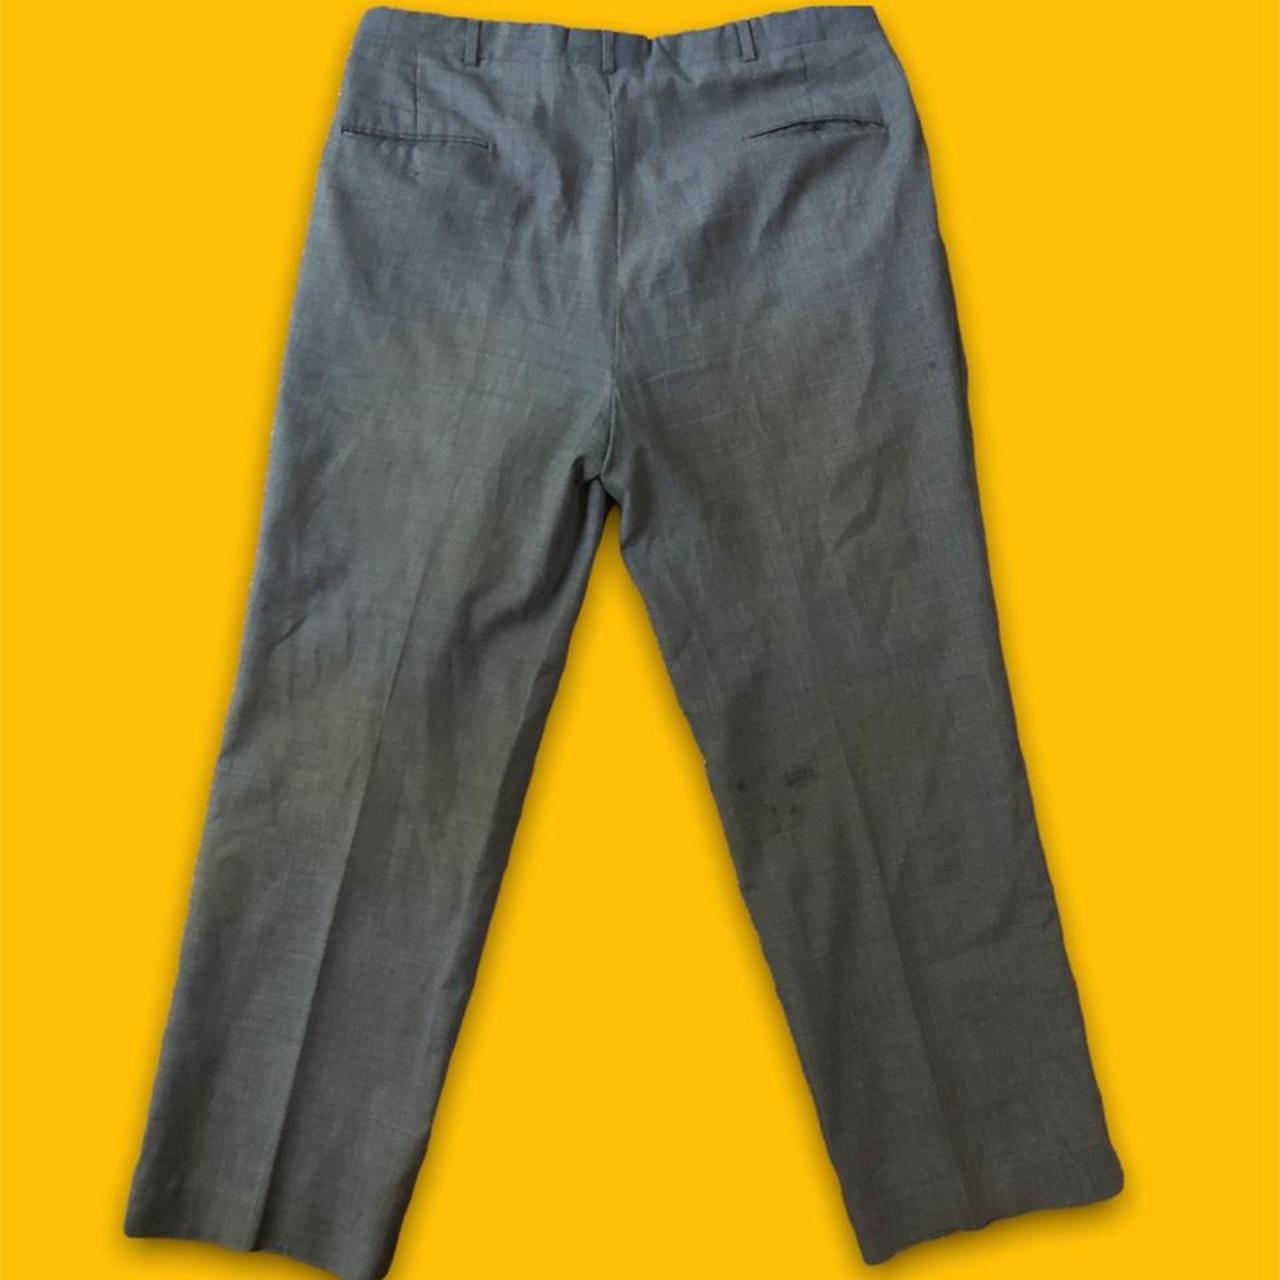 Product Image 2 - Vintage dress pants ! 1980s